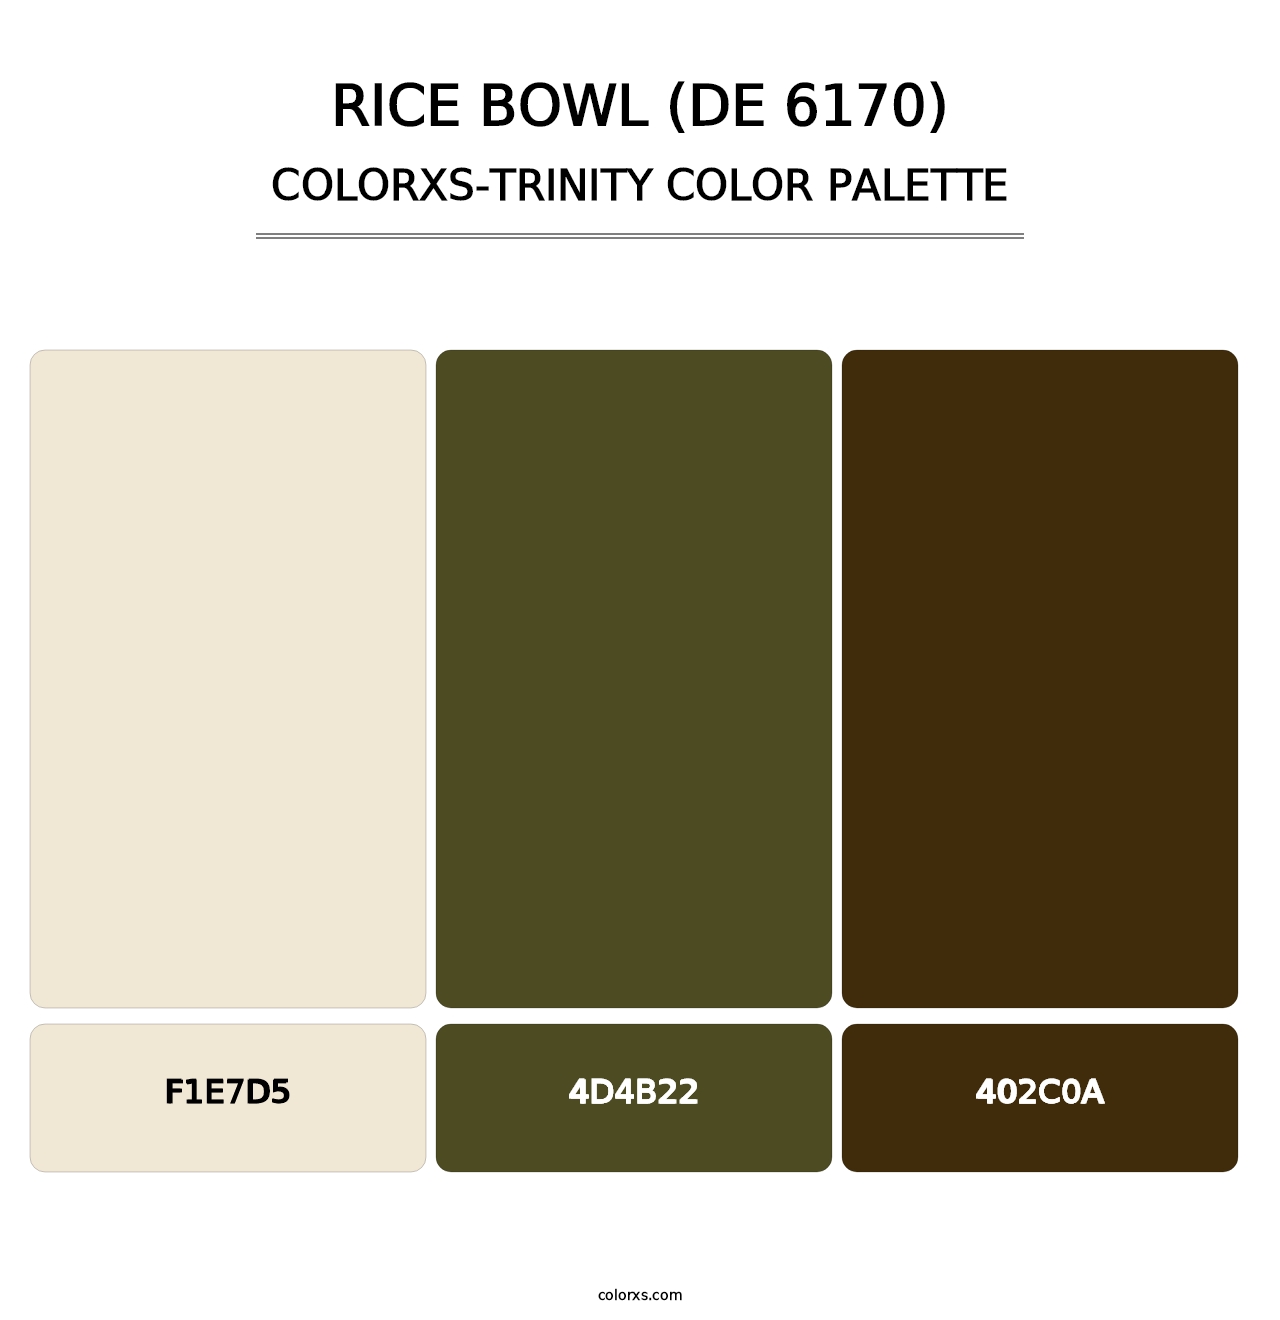 Rice Bowl (DE 6170) - Colorxs Trinity Palette